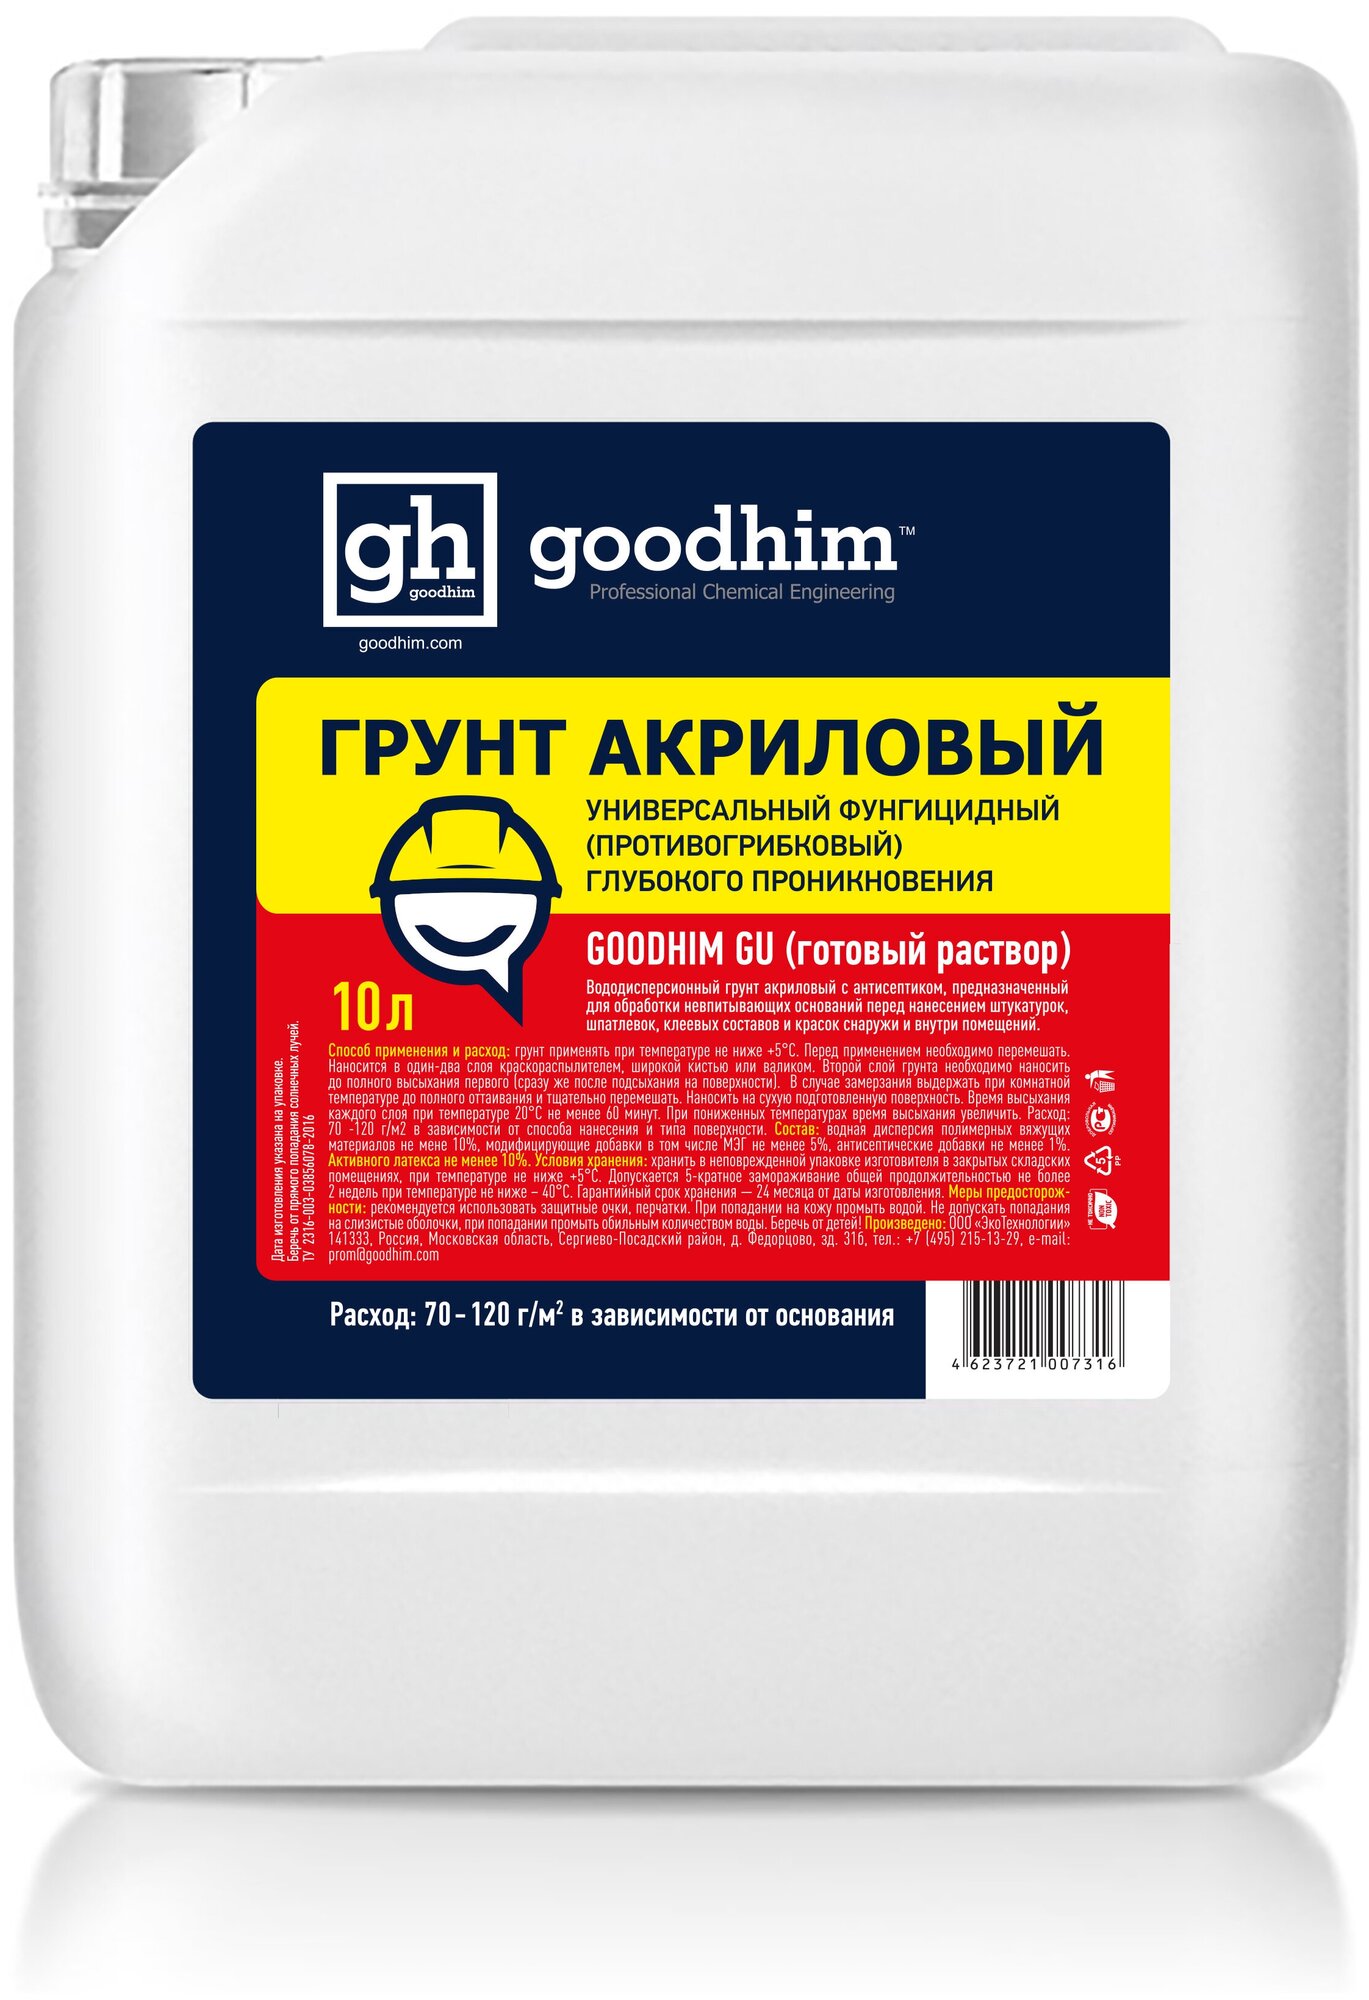 Грунтовка для стен универсальная с антисептиком, GOODHIM GU, 10 л, 73161